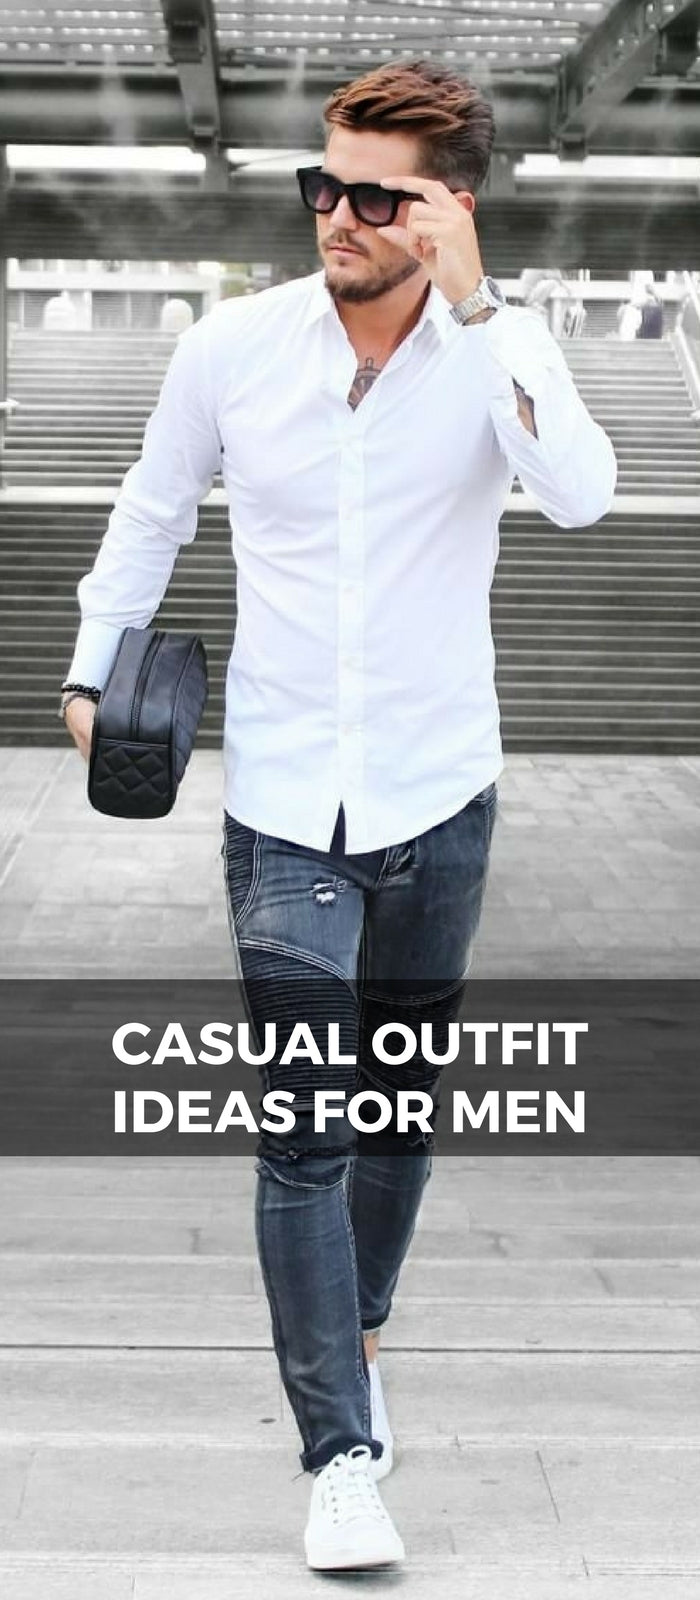 Casual_Outfit_ideas_For_Men_11_ac3c23ef 1e6d 47dc 835b b80505efd75a